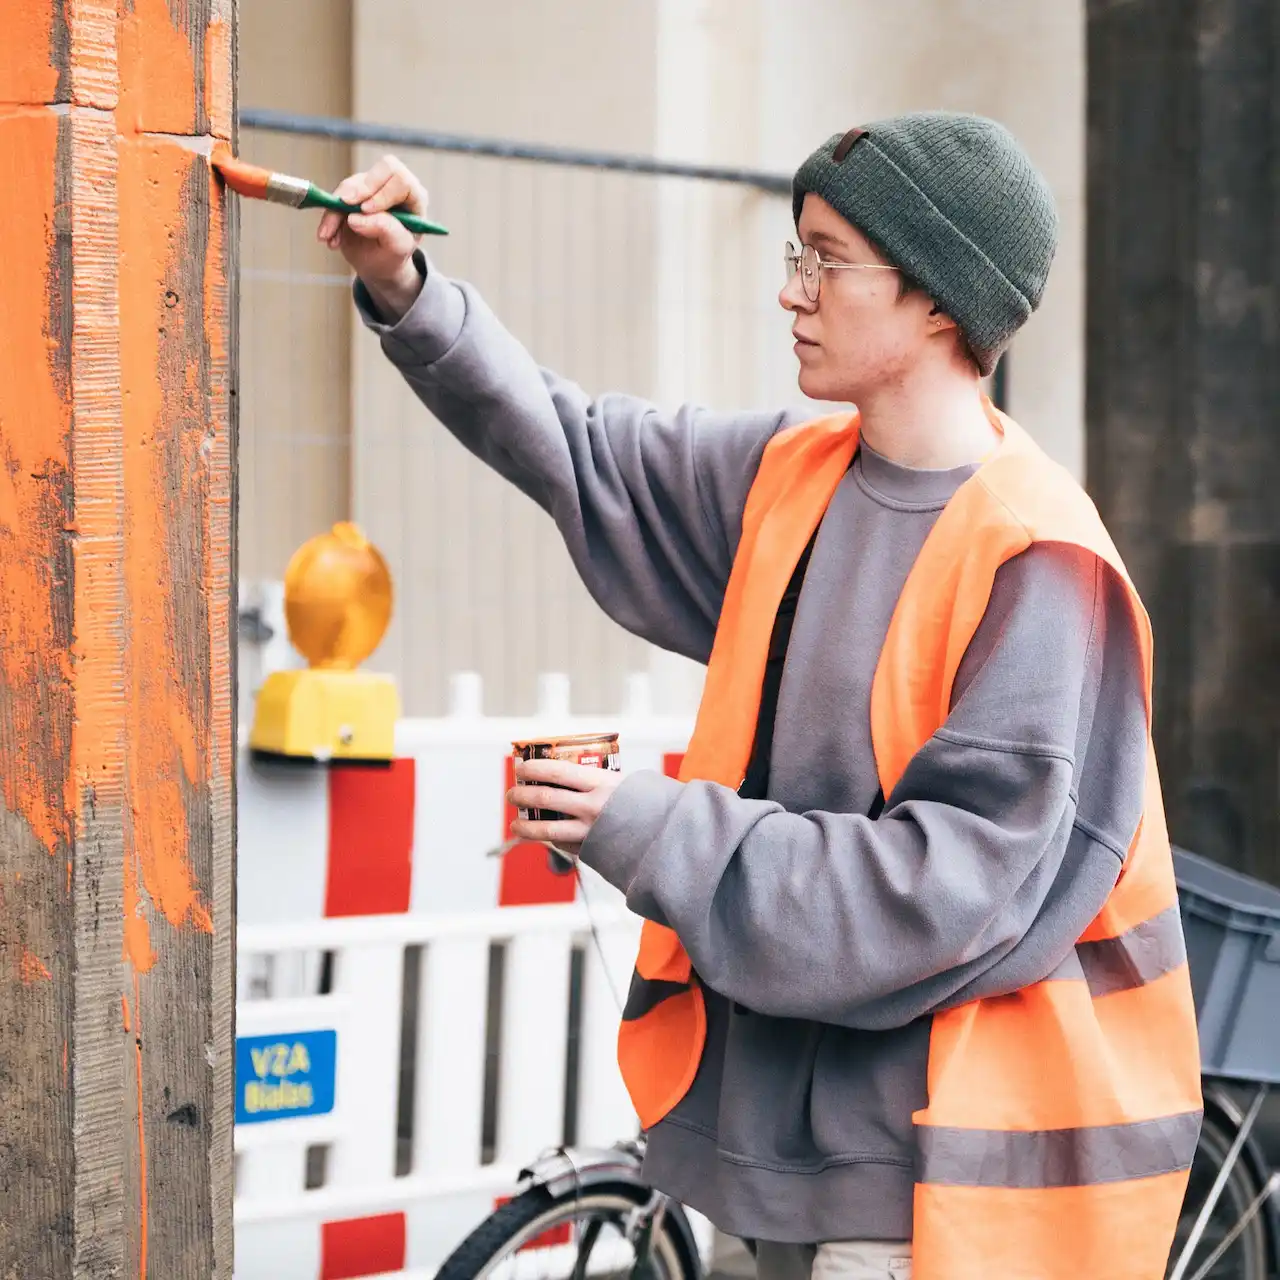 Acción de protesta de 'Letzte Generation' contra los combustibles fósiles. Jóvenes activistas climáticos pintan de nuevo la Puerta de Brandeburgo  / Foto: Letzte Generation